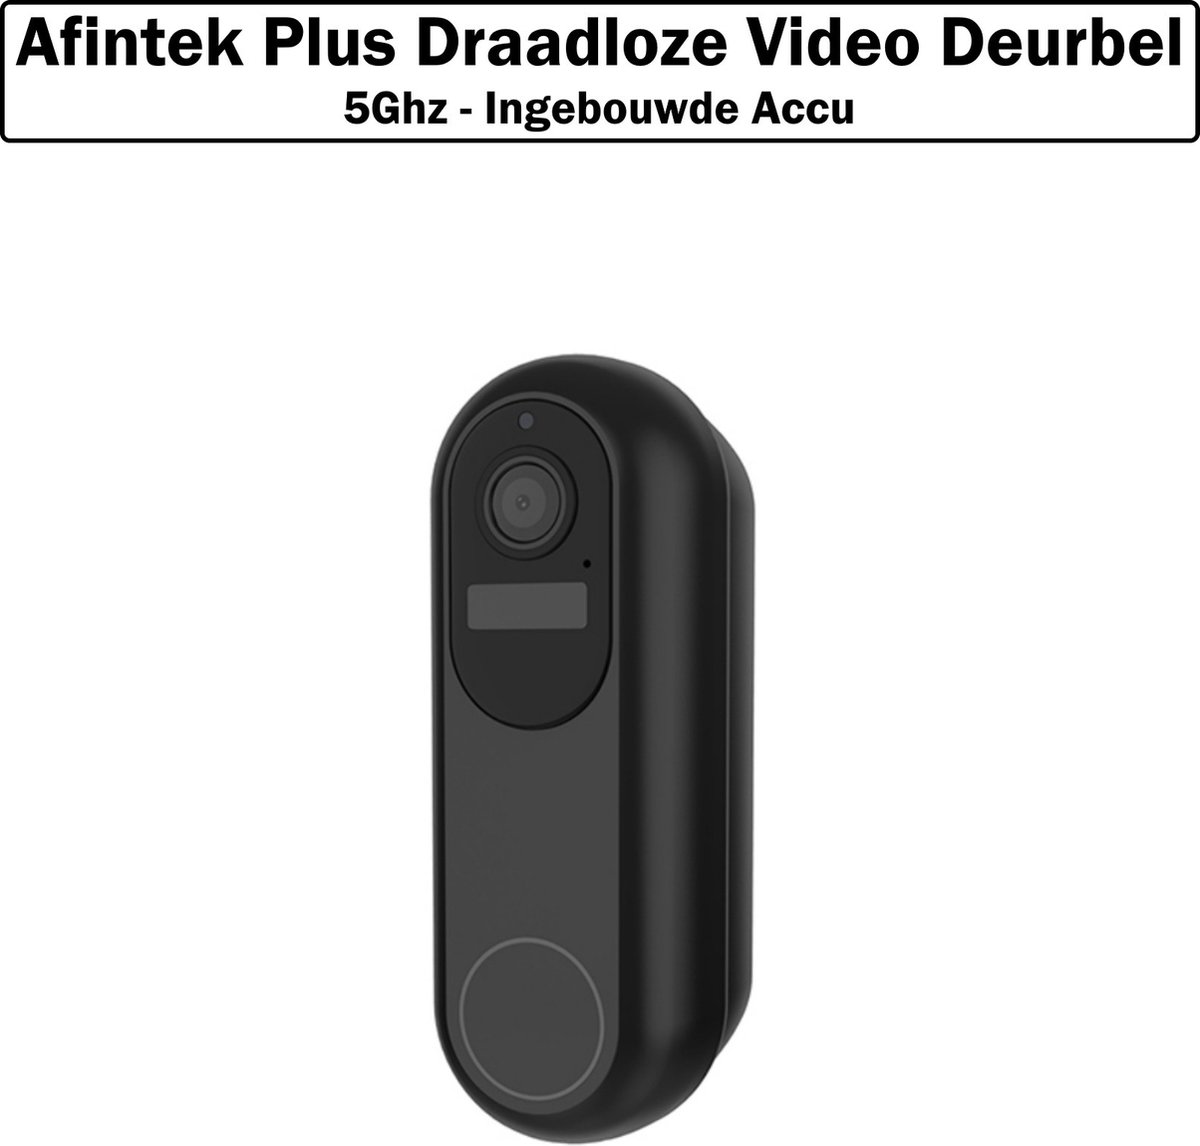 Afintek Plus Draadloze Video Deurbel - Deurbel Met Camera - 5Ghz - Ingebouwde Accu